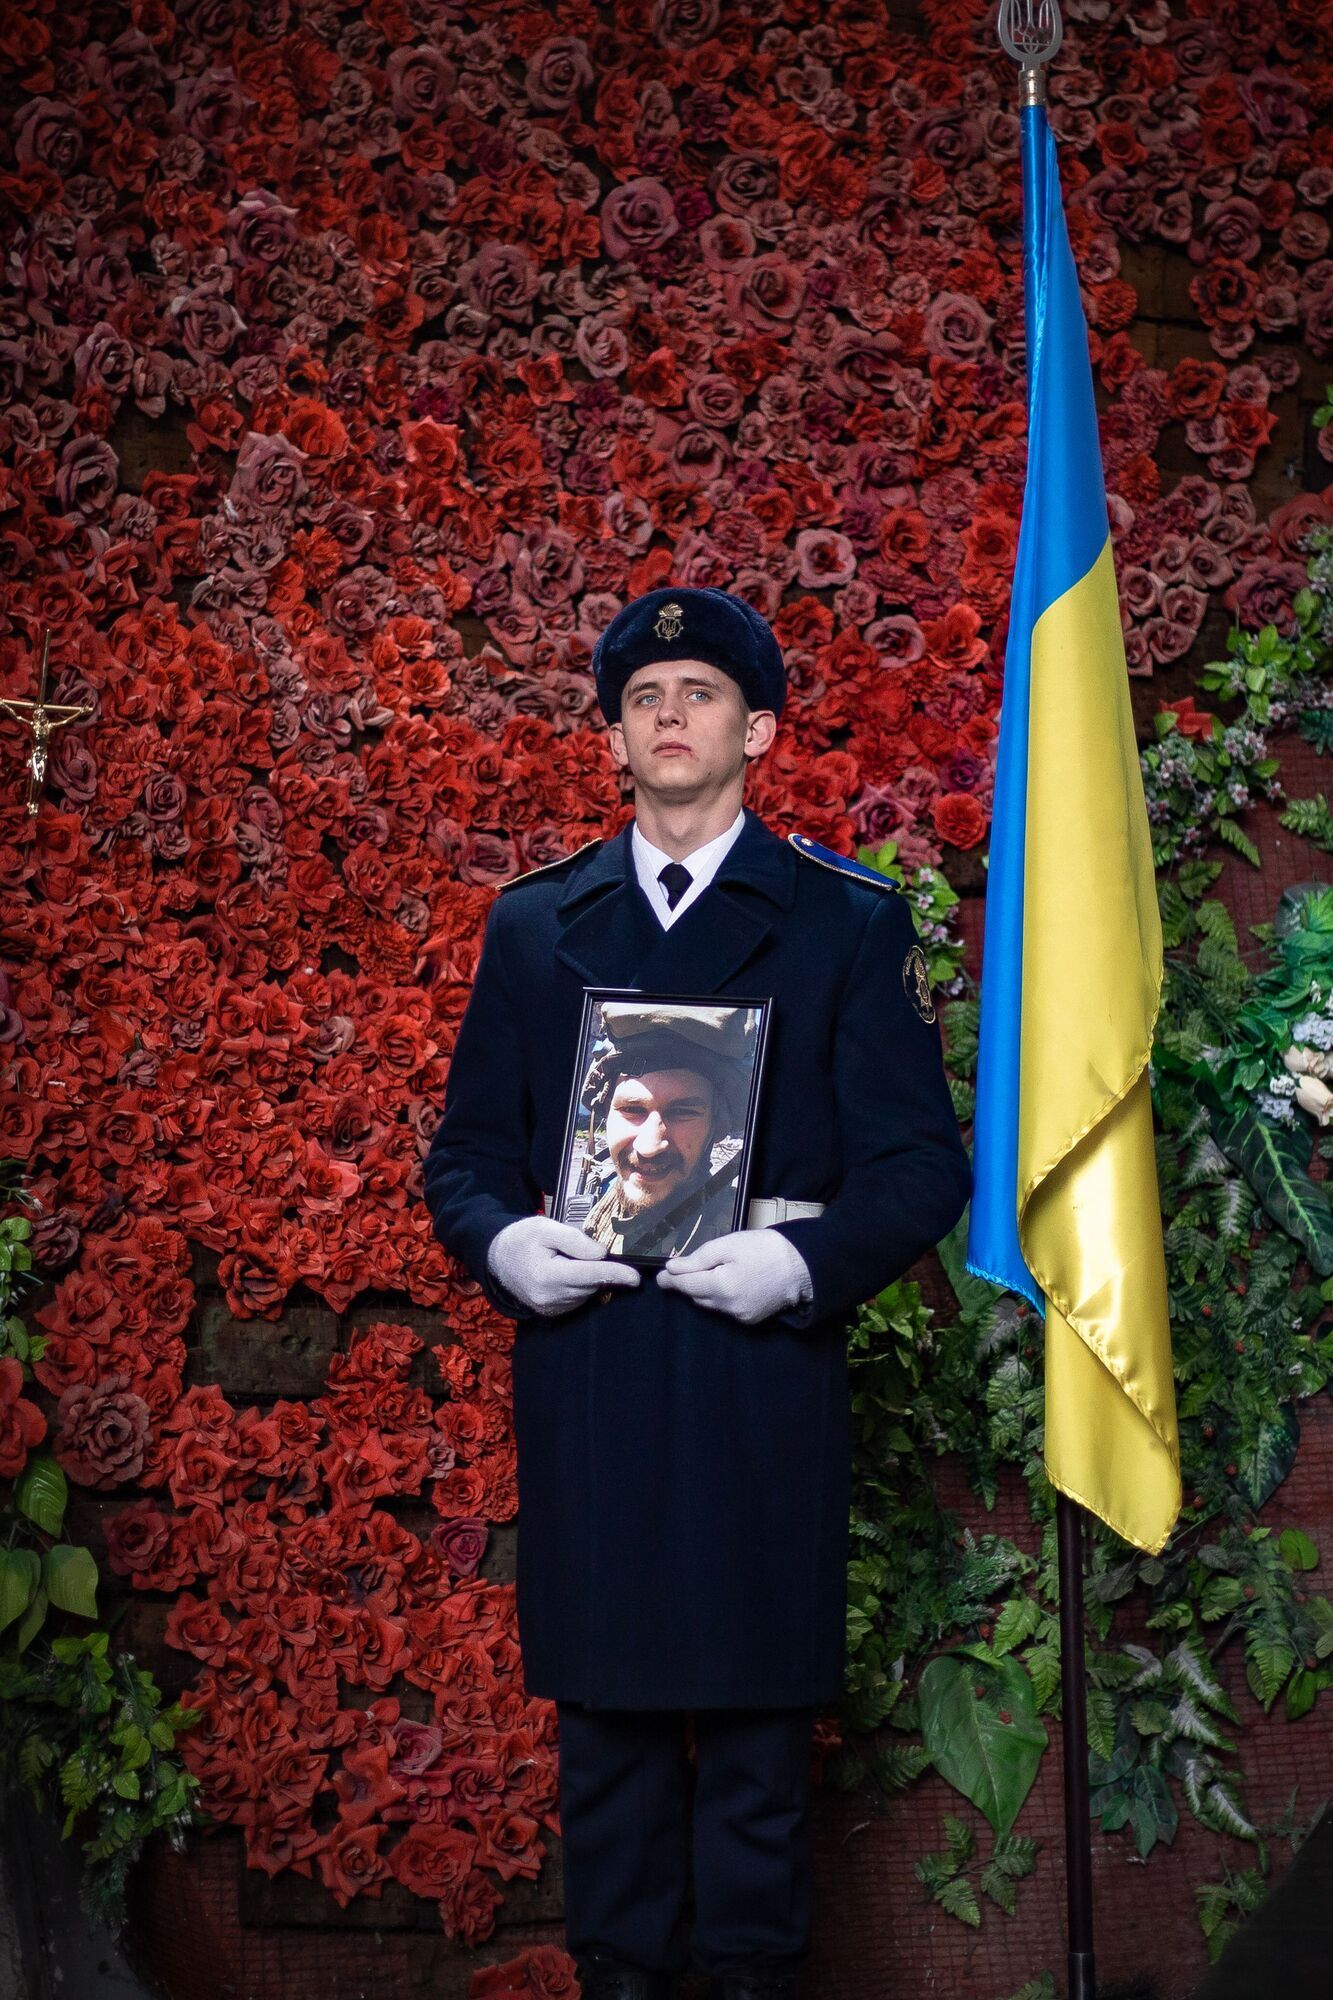 У Києві попрощалися із захисником Маріуполя з позивним ''Лев'', якого окупанти вбили в Оленівці. Фото і відео